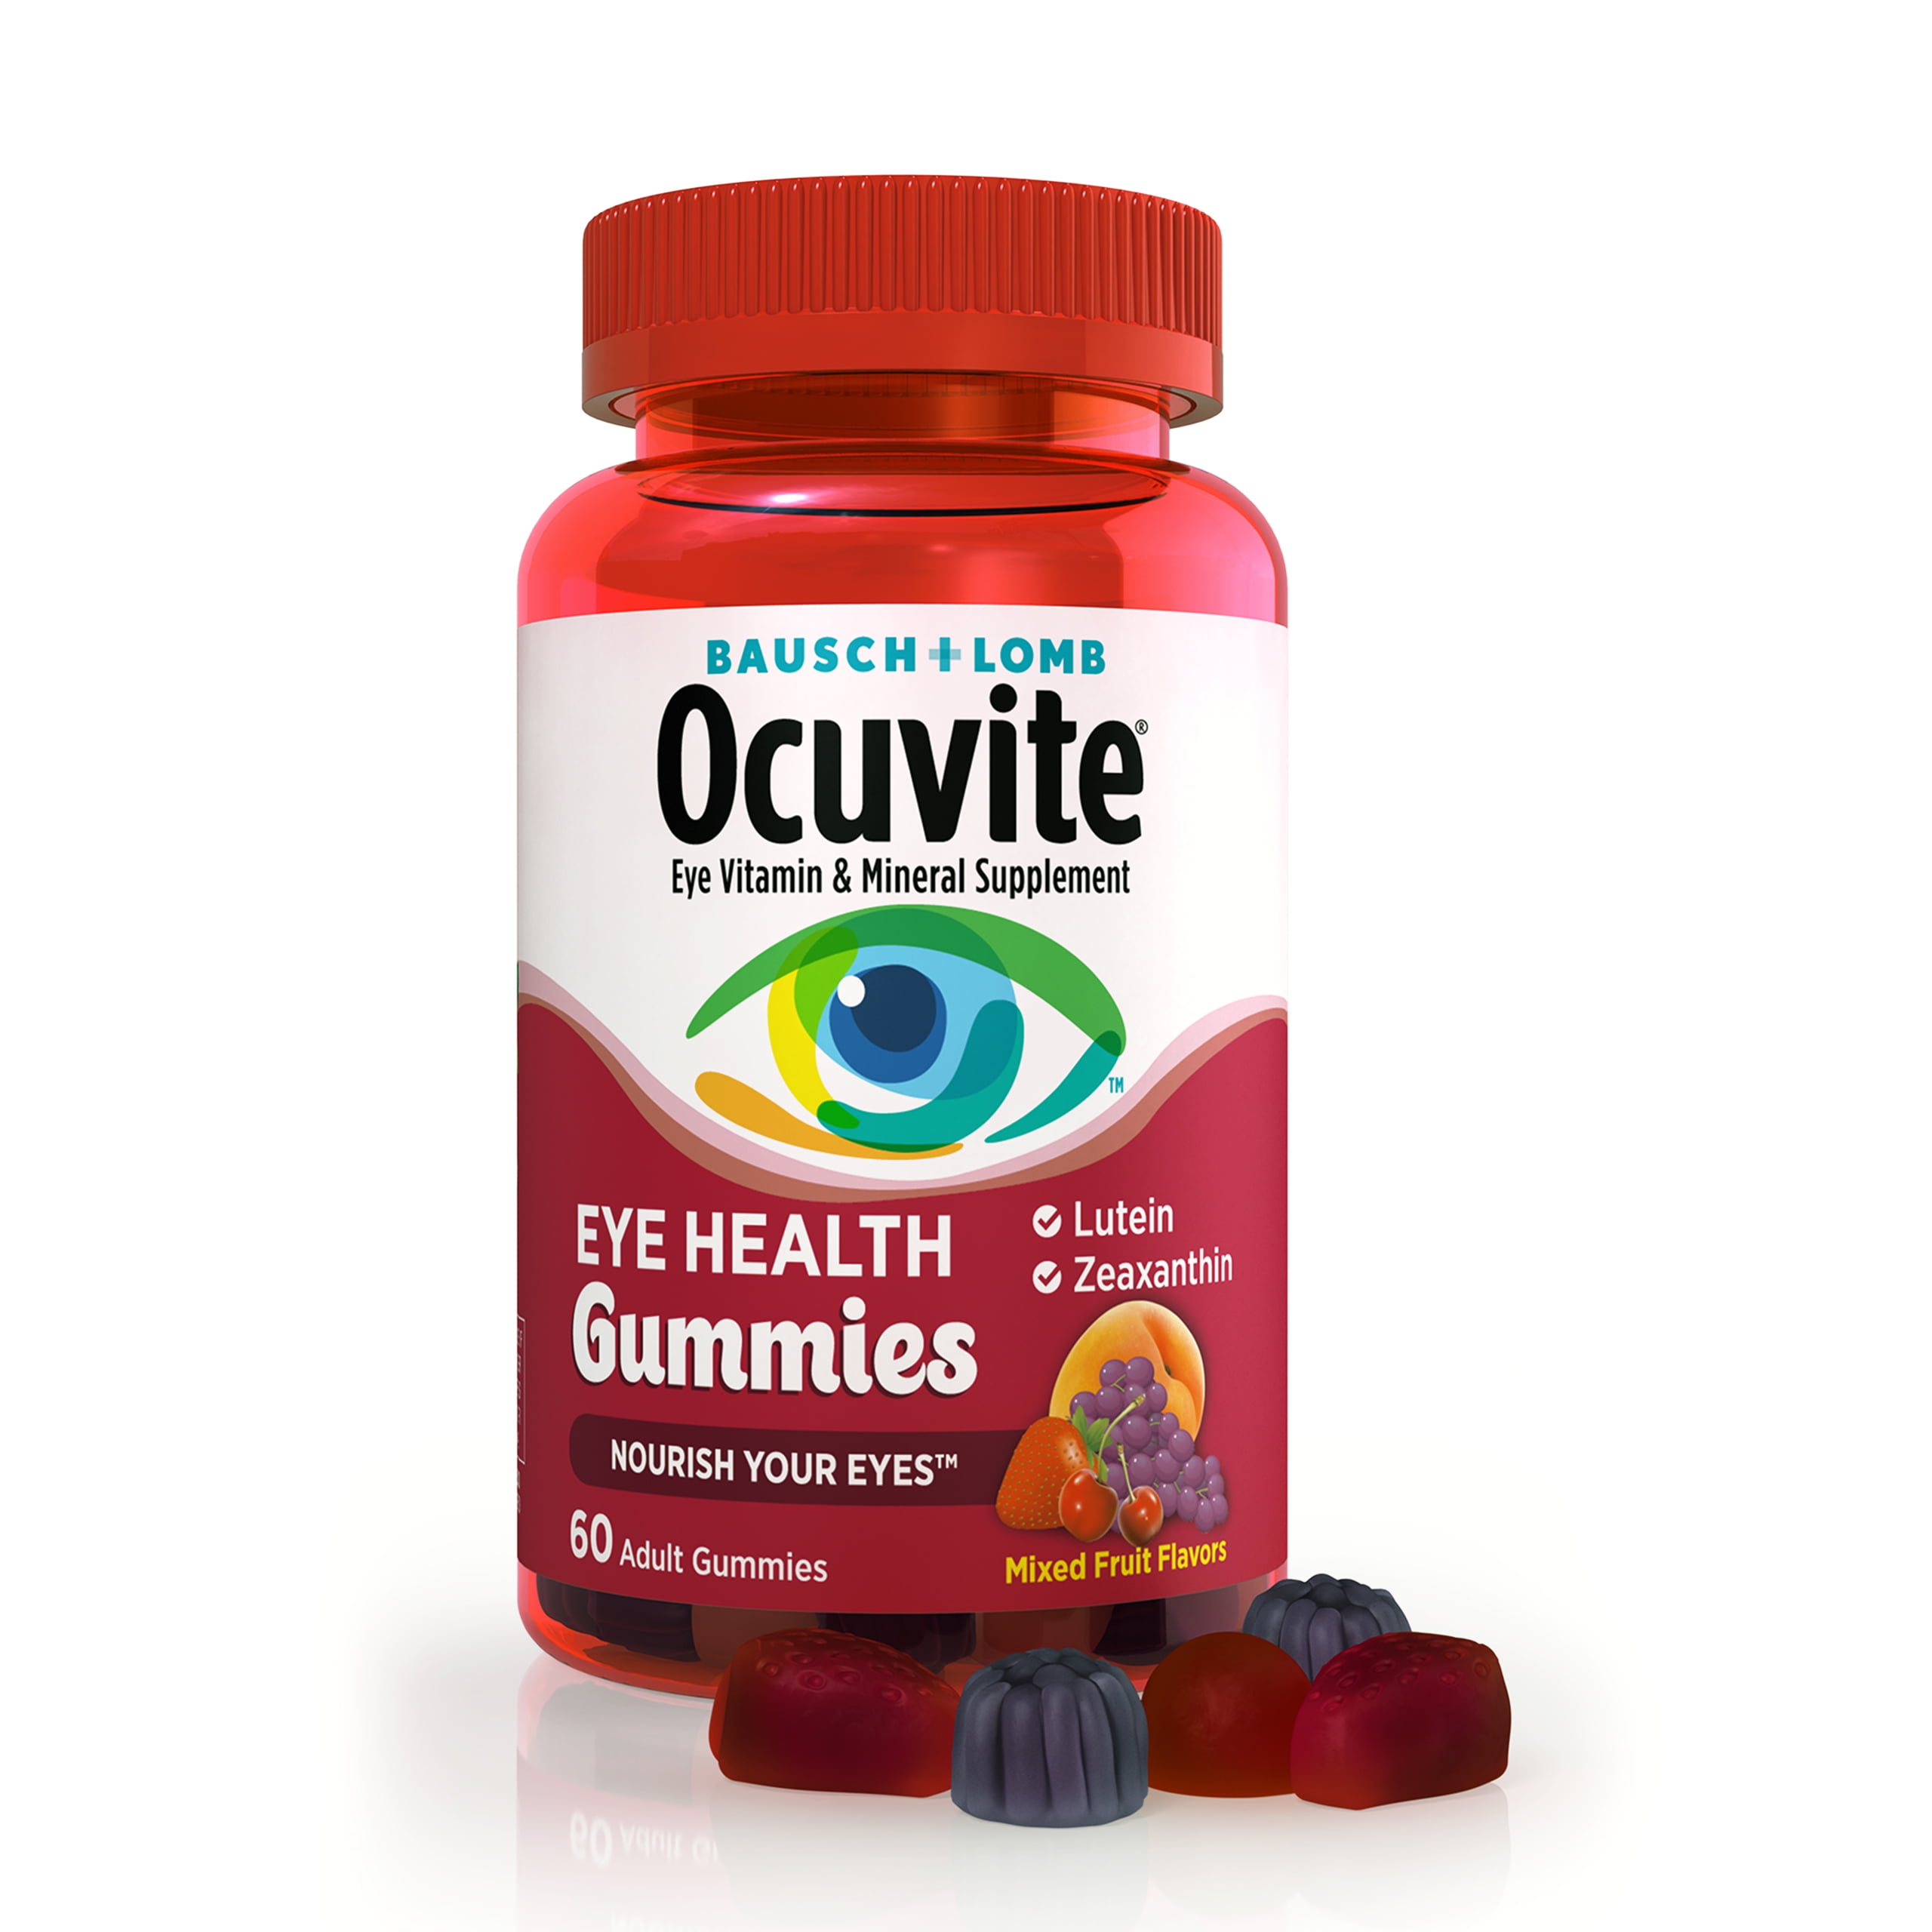 Ocuvite Eye Vitamin & Mineral Supplement, Eye Health Adult Gummies, Contains Lutein & Zeaxanthin, 60 Gummies